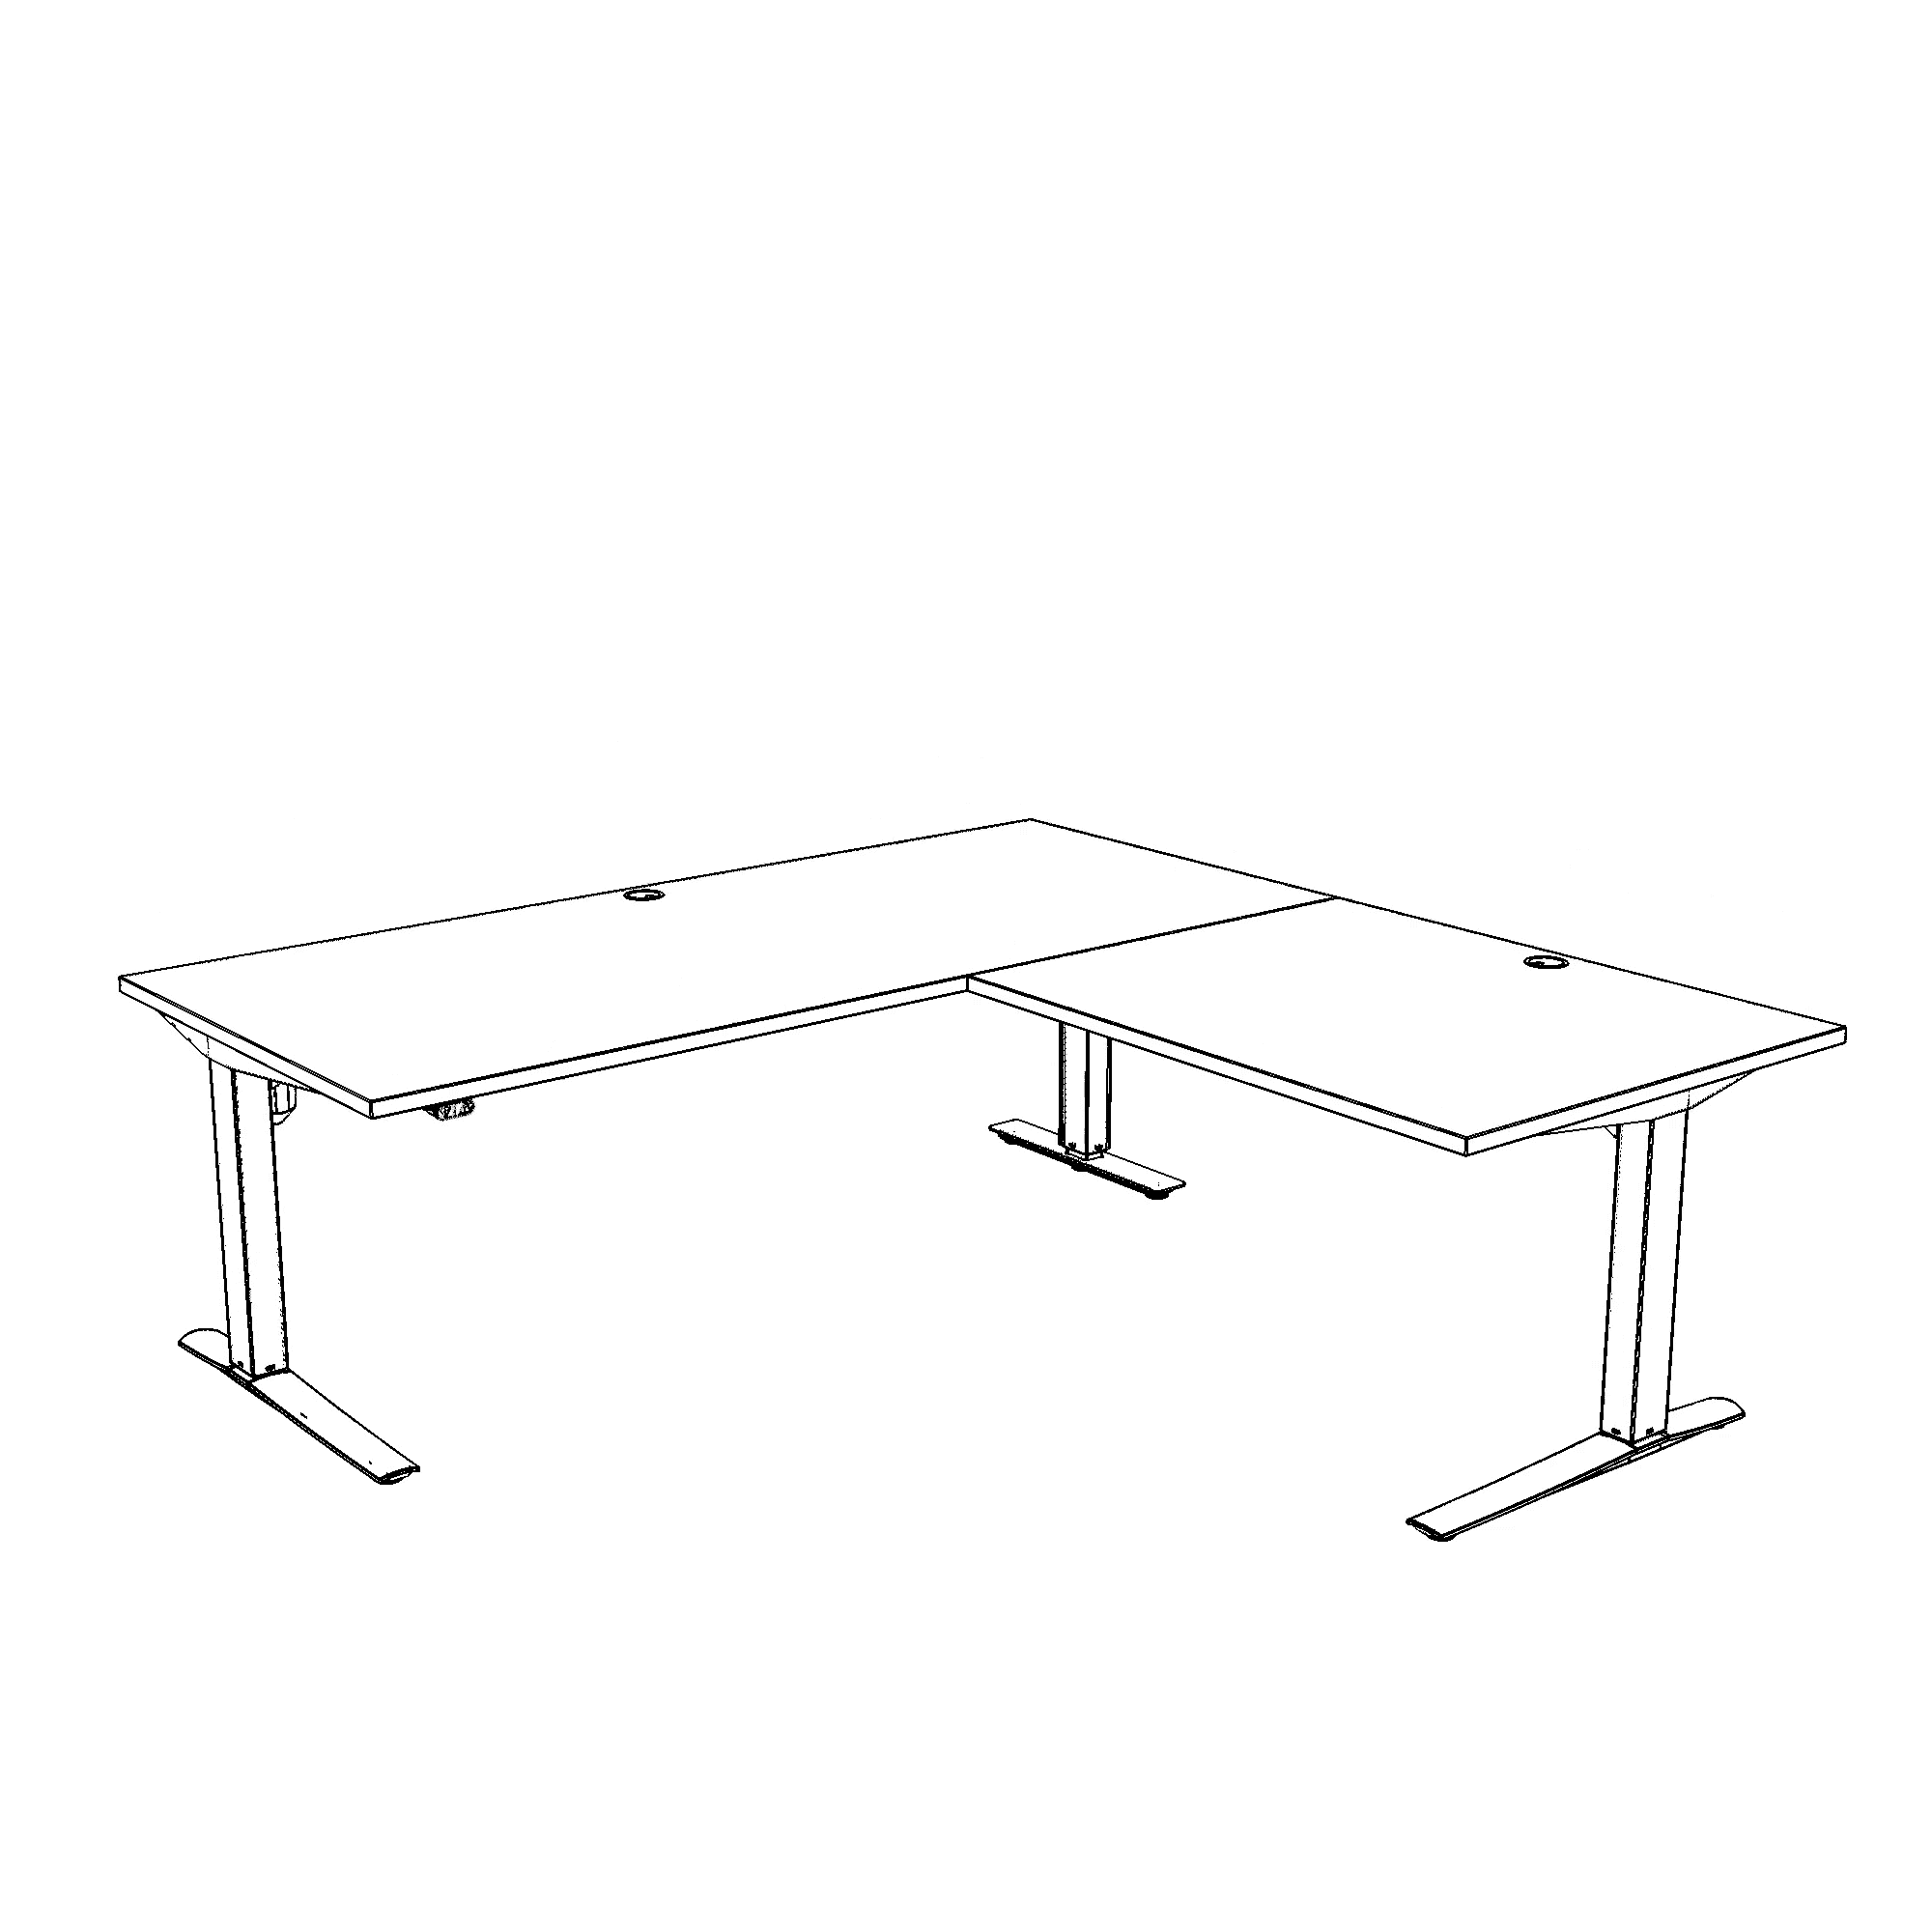 Hæve-/sænkebord | 180x180 cm | Bøg med sølv stel